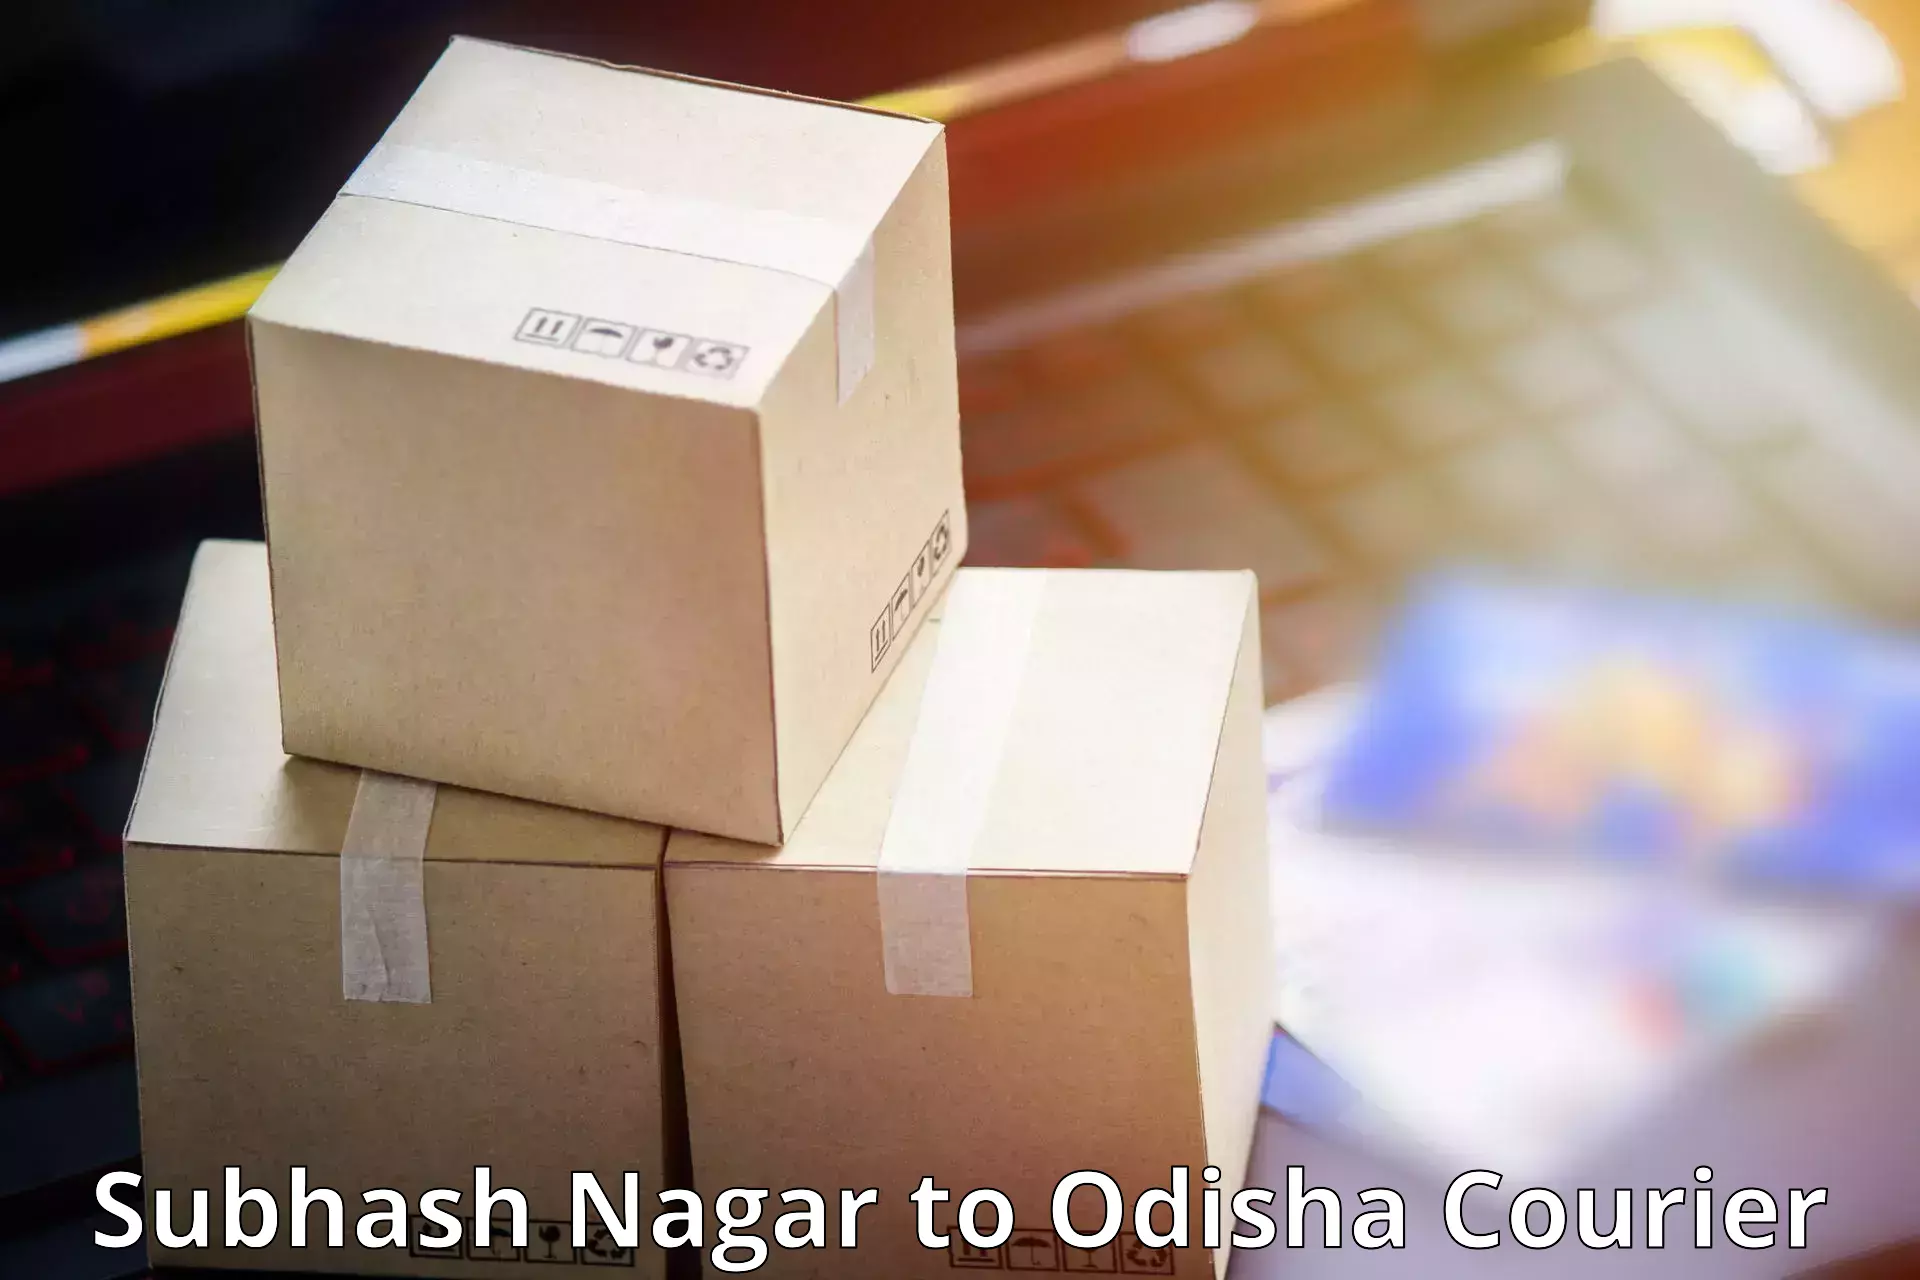 International parcel service Subhash Nagar to Bahalda